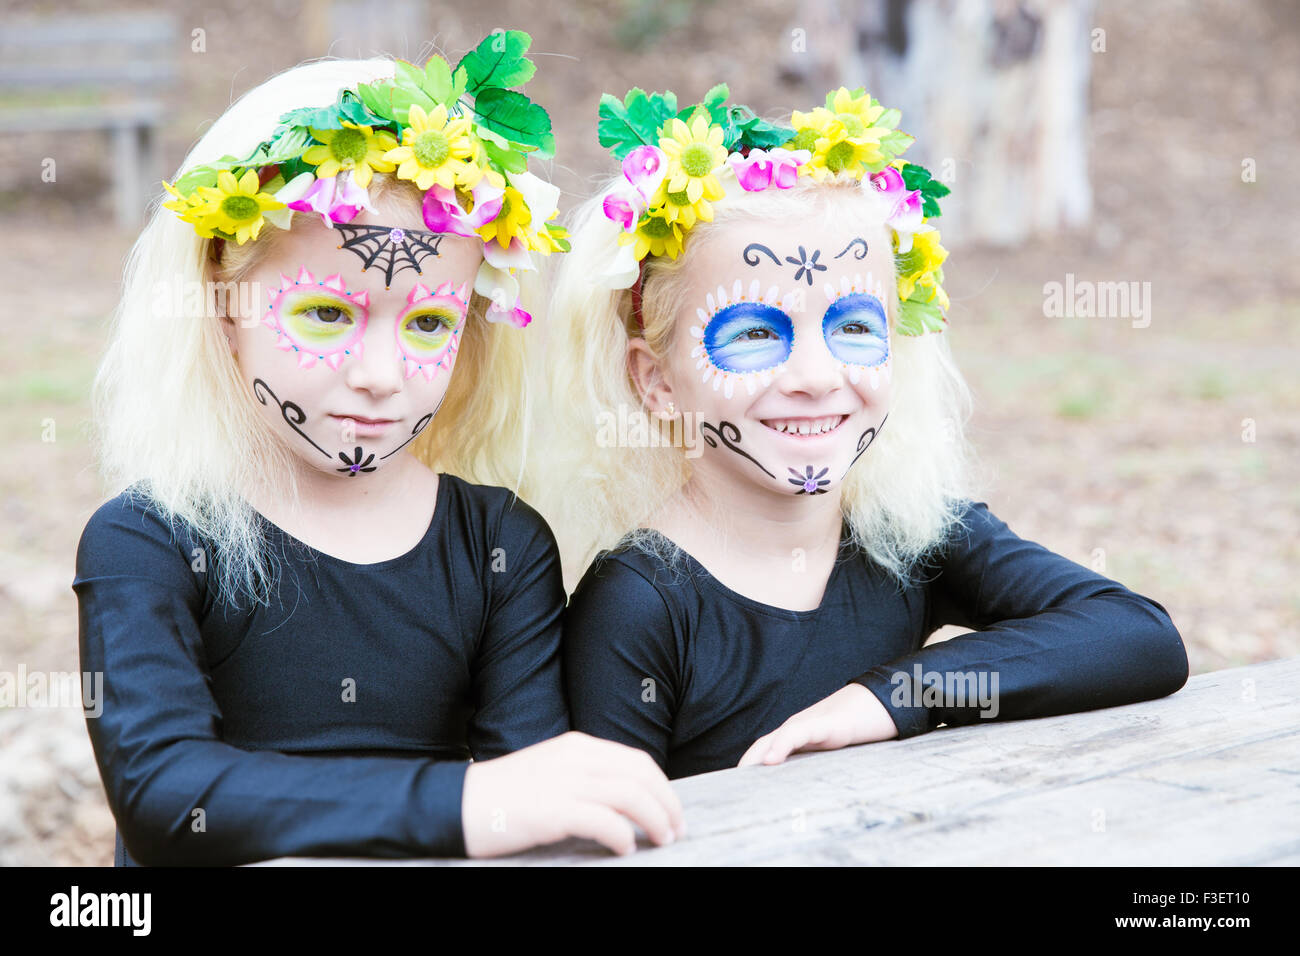 Des jumelles dans les vêtements noirs avec crâne en sucre makeup smiling Banque D'Images